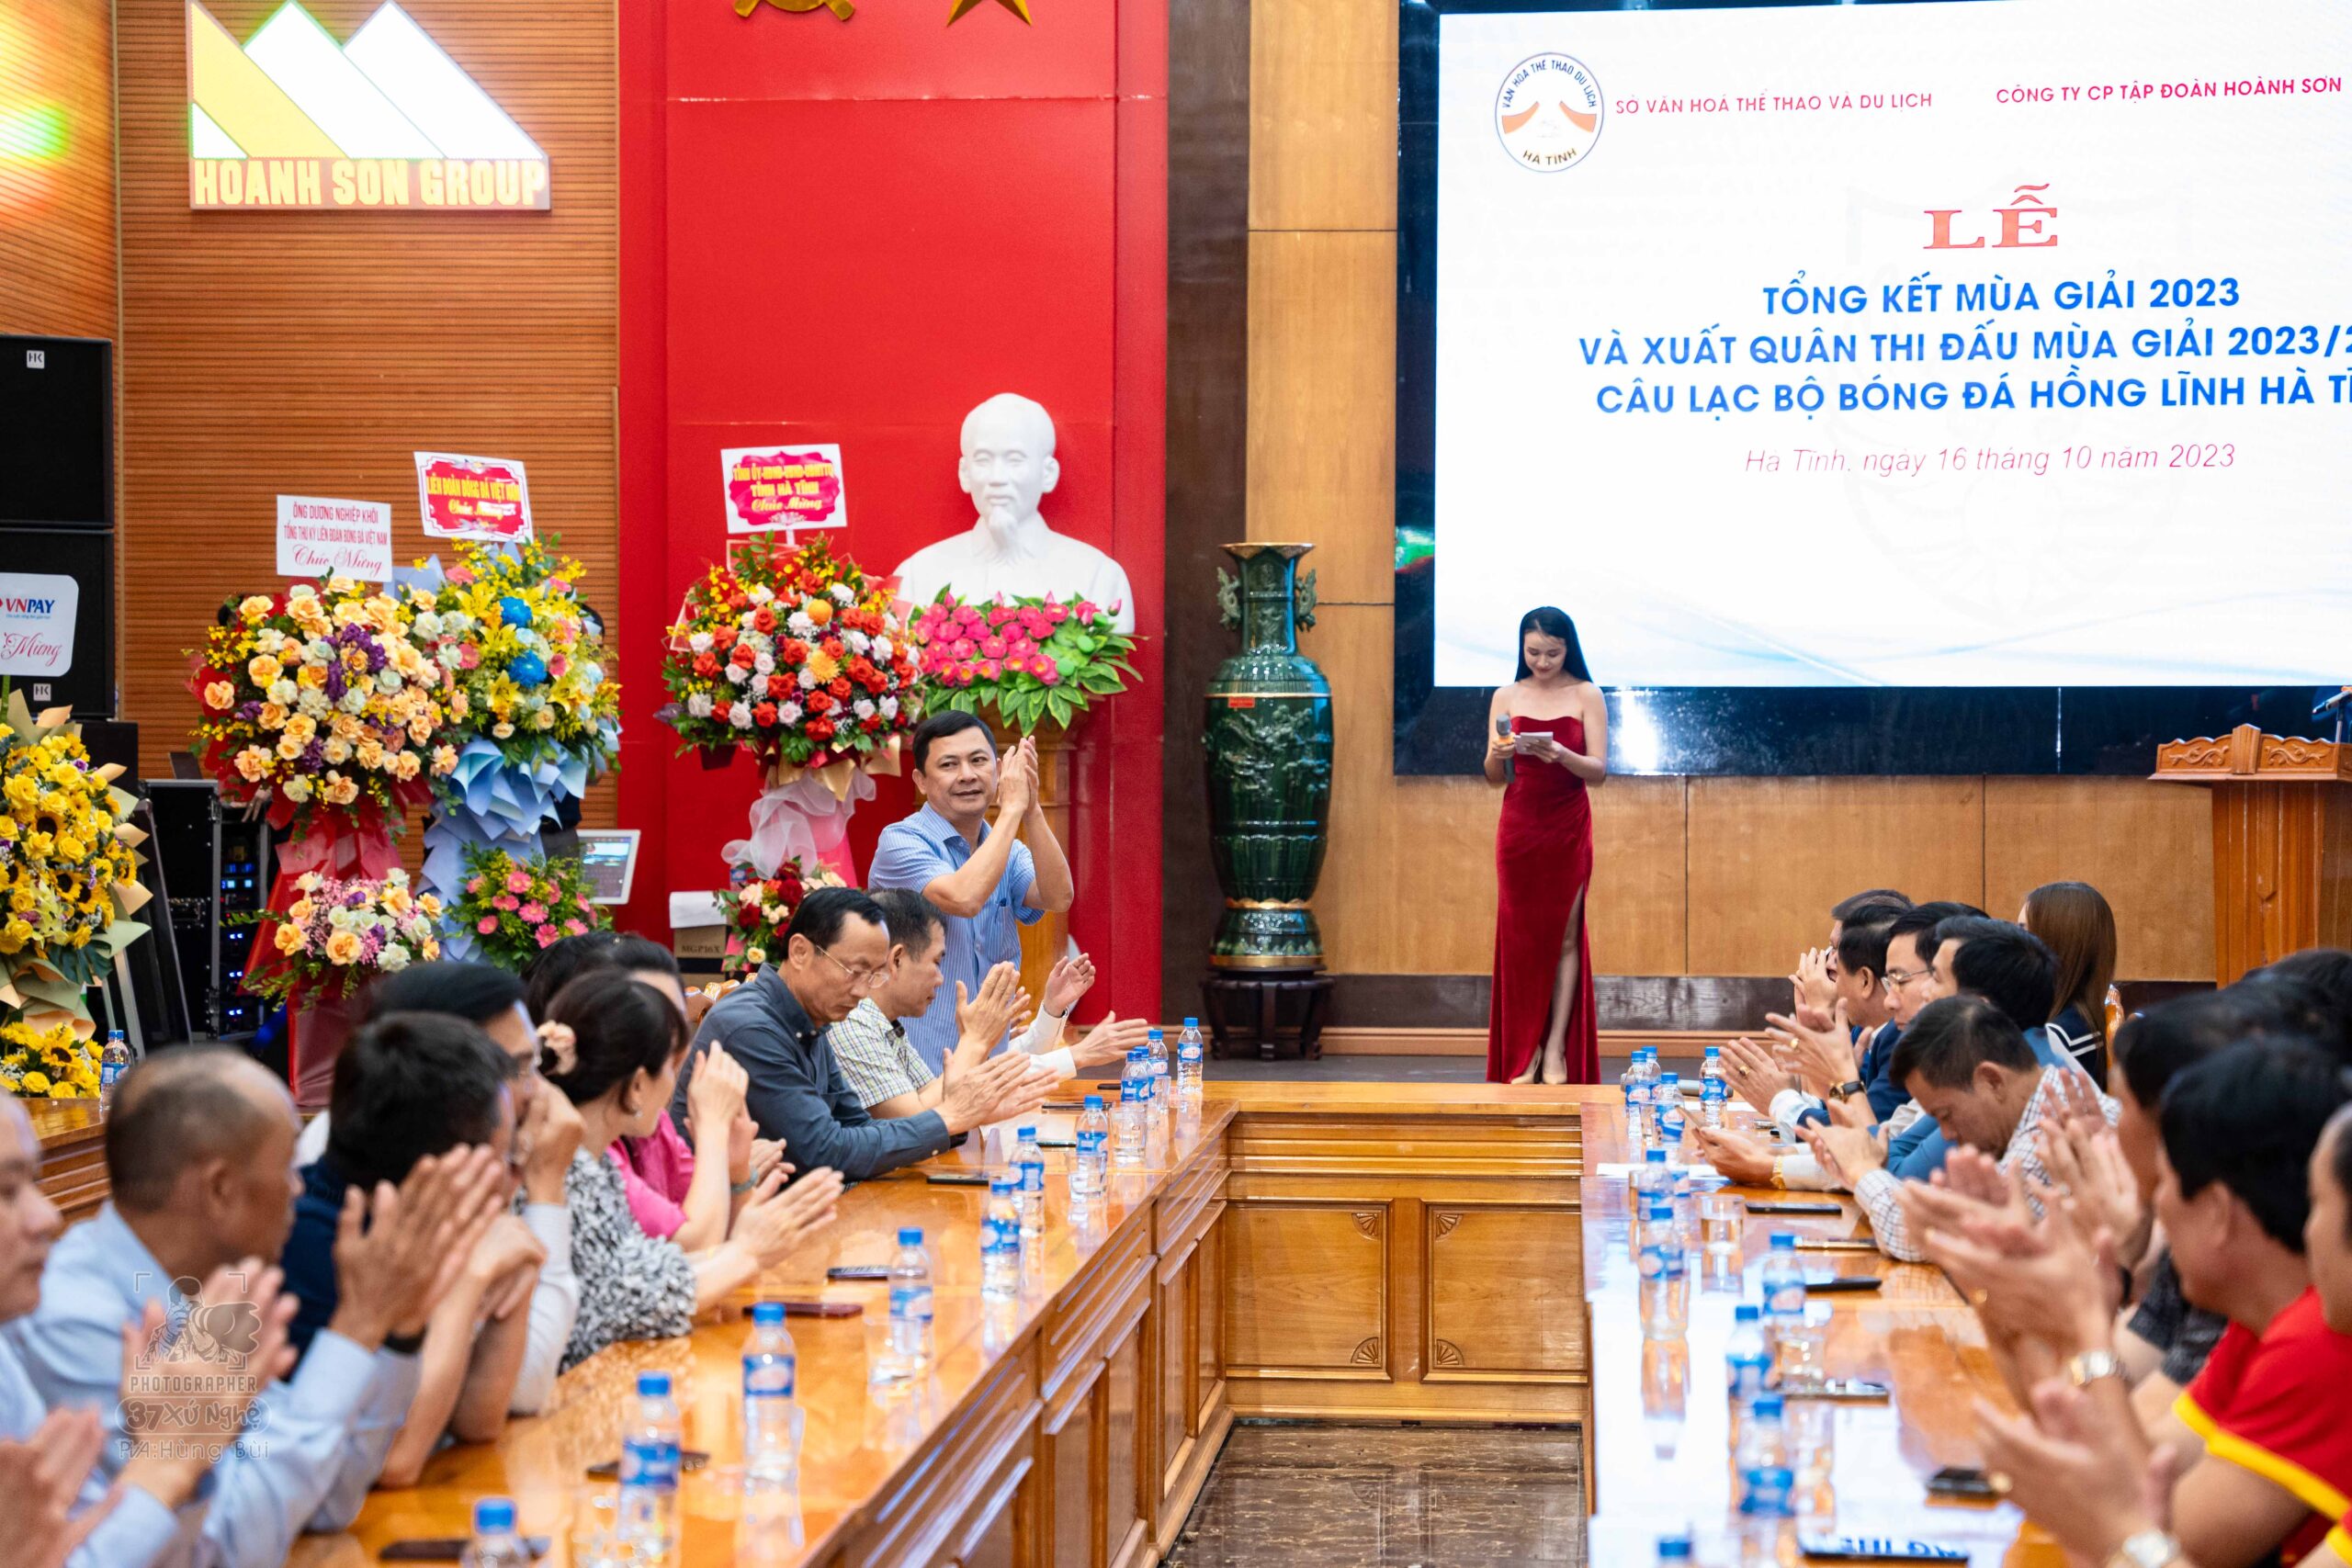 Đồng chí Lê Ngọc Châu - Phó chủ tịch UBND tỉnh Hà Tĩnh